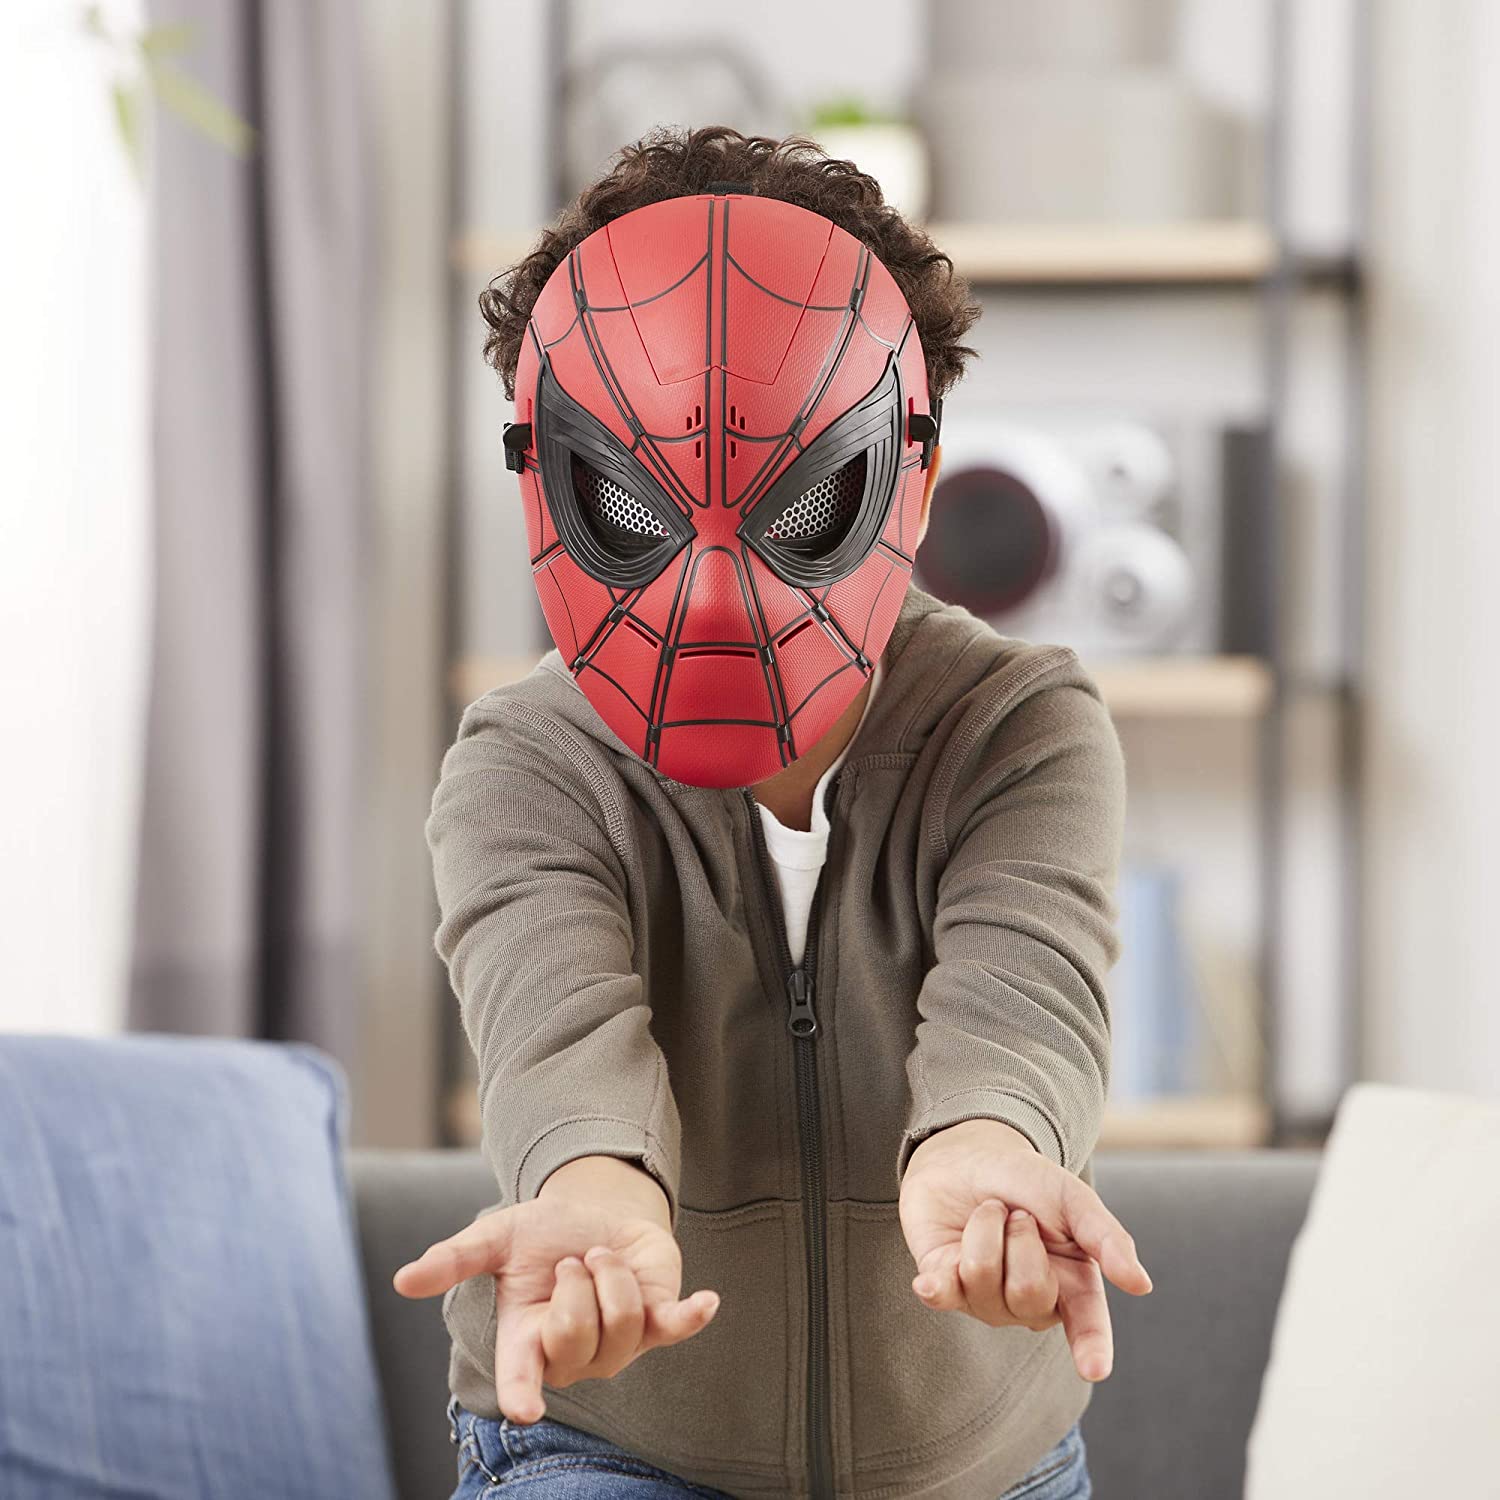 Với thiết kế chân thực, mặt nạ Spider-Man Fx sẽ khiến bạn có cảm giác rất gần gũi với người nhện. Với khả năng phun ra những tia sáng như trong phim, mặt nạ Spider-Man Fx là một trải nghiệm vô cùng đặc biệt. Hãy xem chi tiết về mặt nạ Spider-Man Fx và trải nghiệm cảm giác trở thành người nhện trong thực tế.